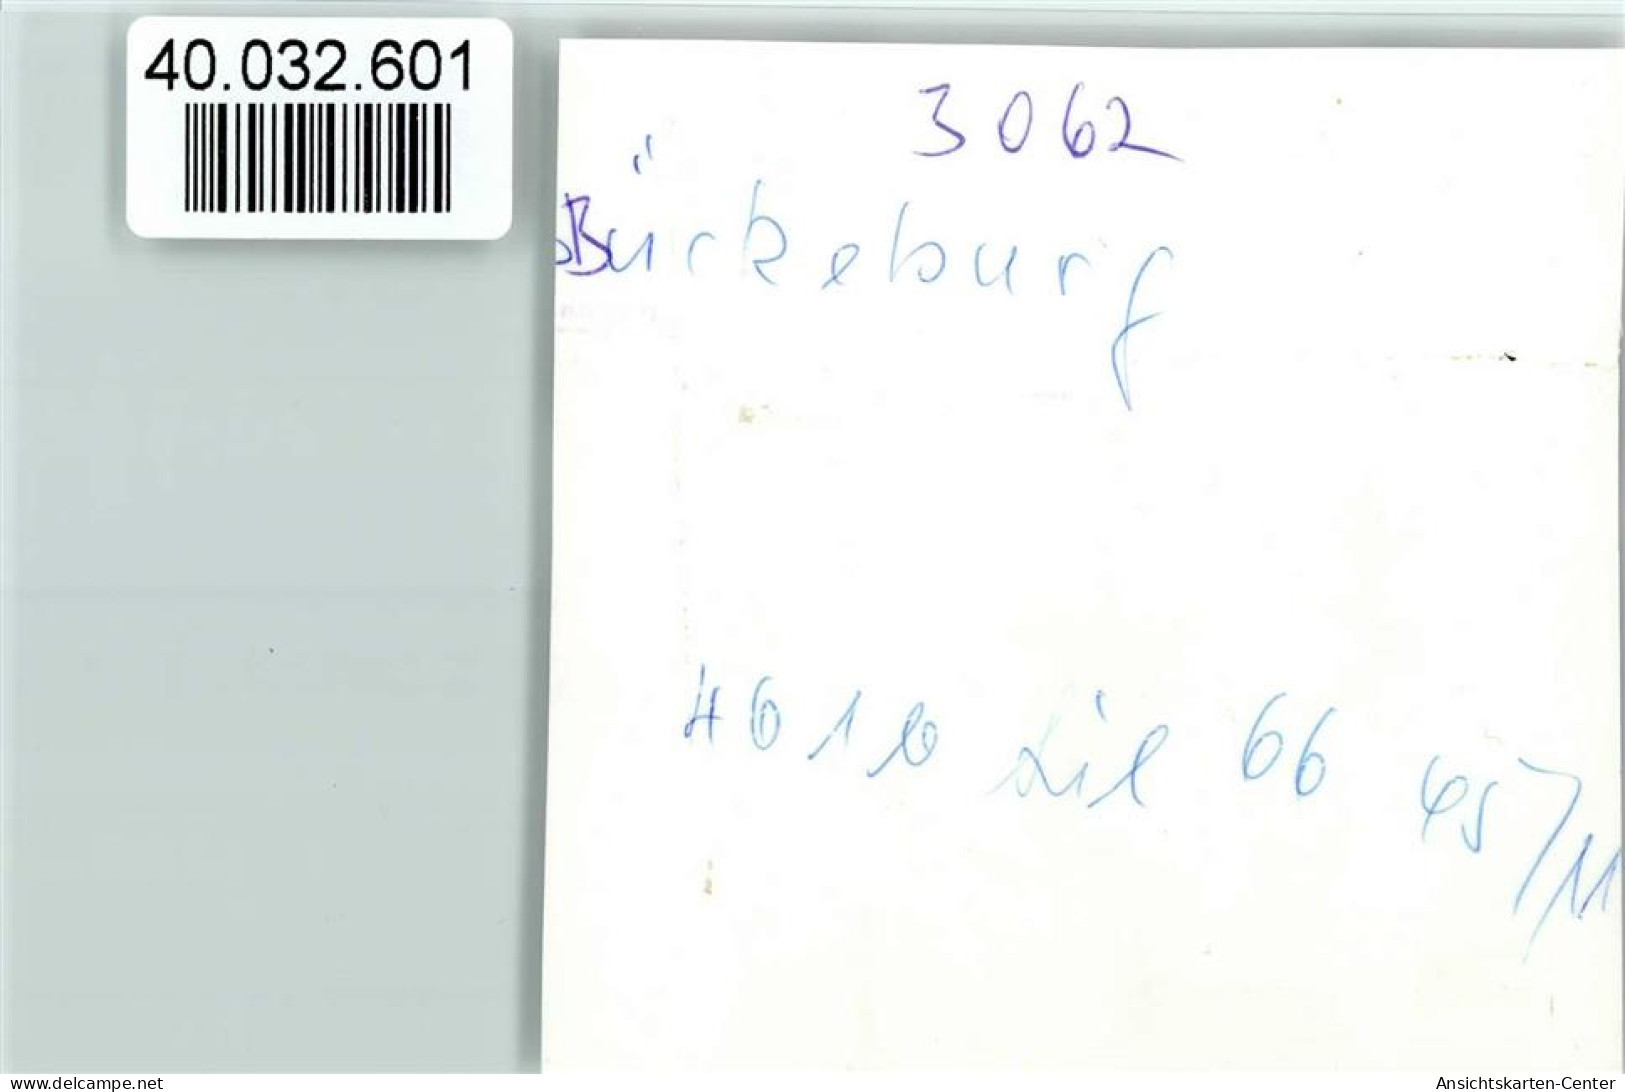 40032601 - Bueckeburg - Bückeburg